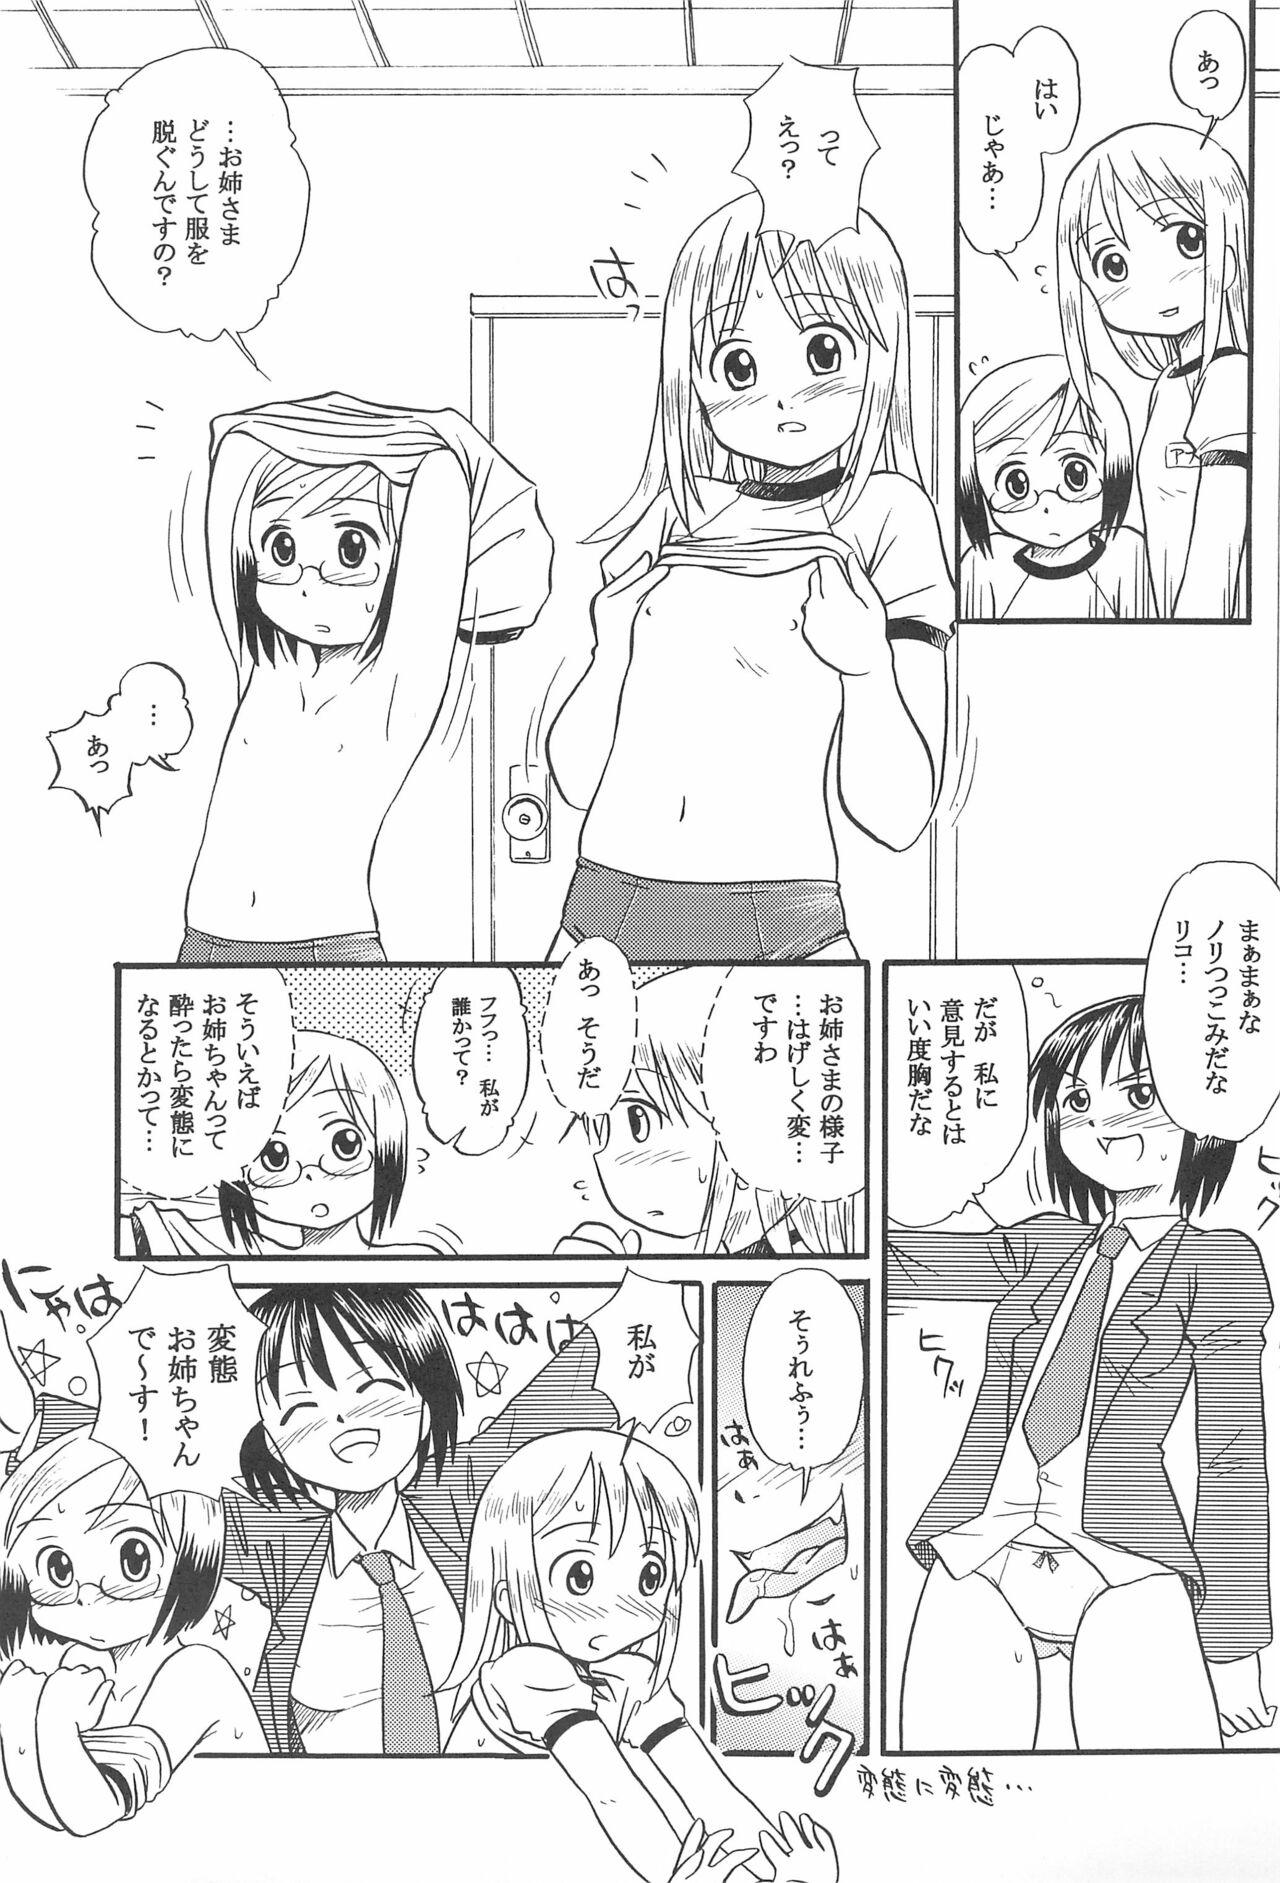 Pene Ichigo Renniu - Ichigo mashimaro Girls Getting Fucked - Page 7